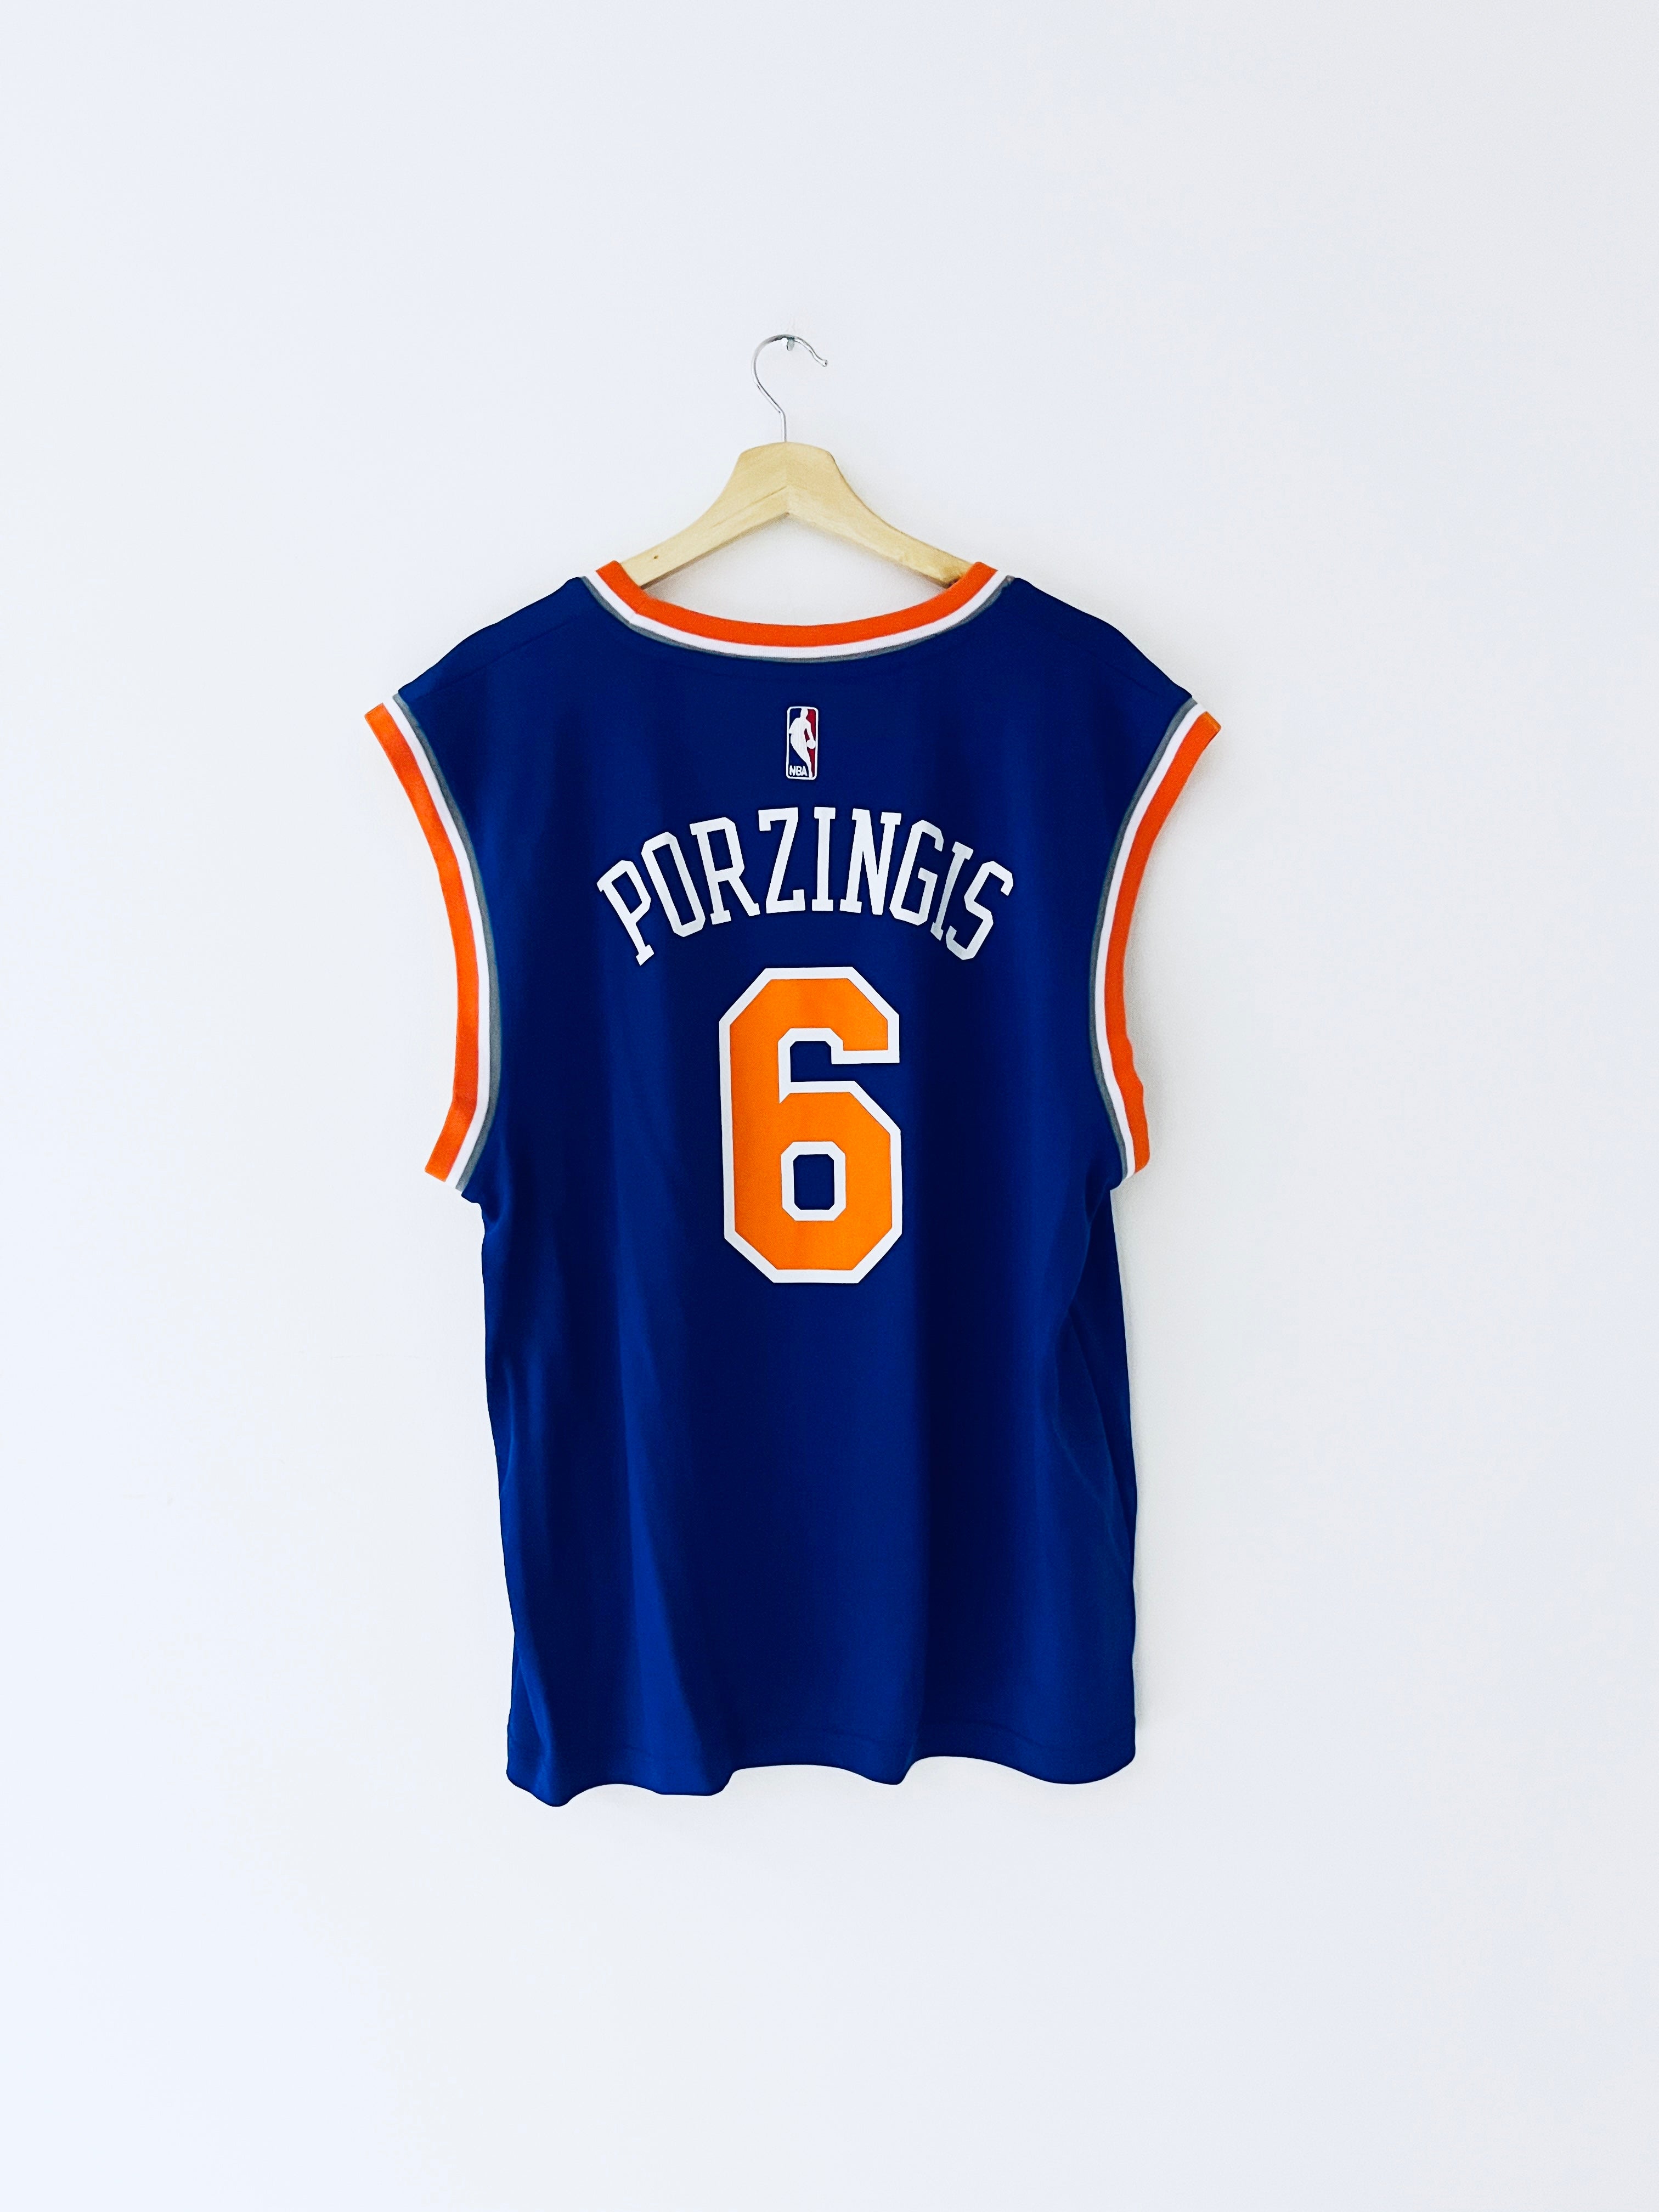 Maillot de route Adidas des New York Knicks 2015-17 Porzingis #6 (L) BNWT